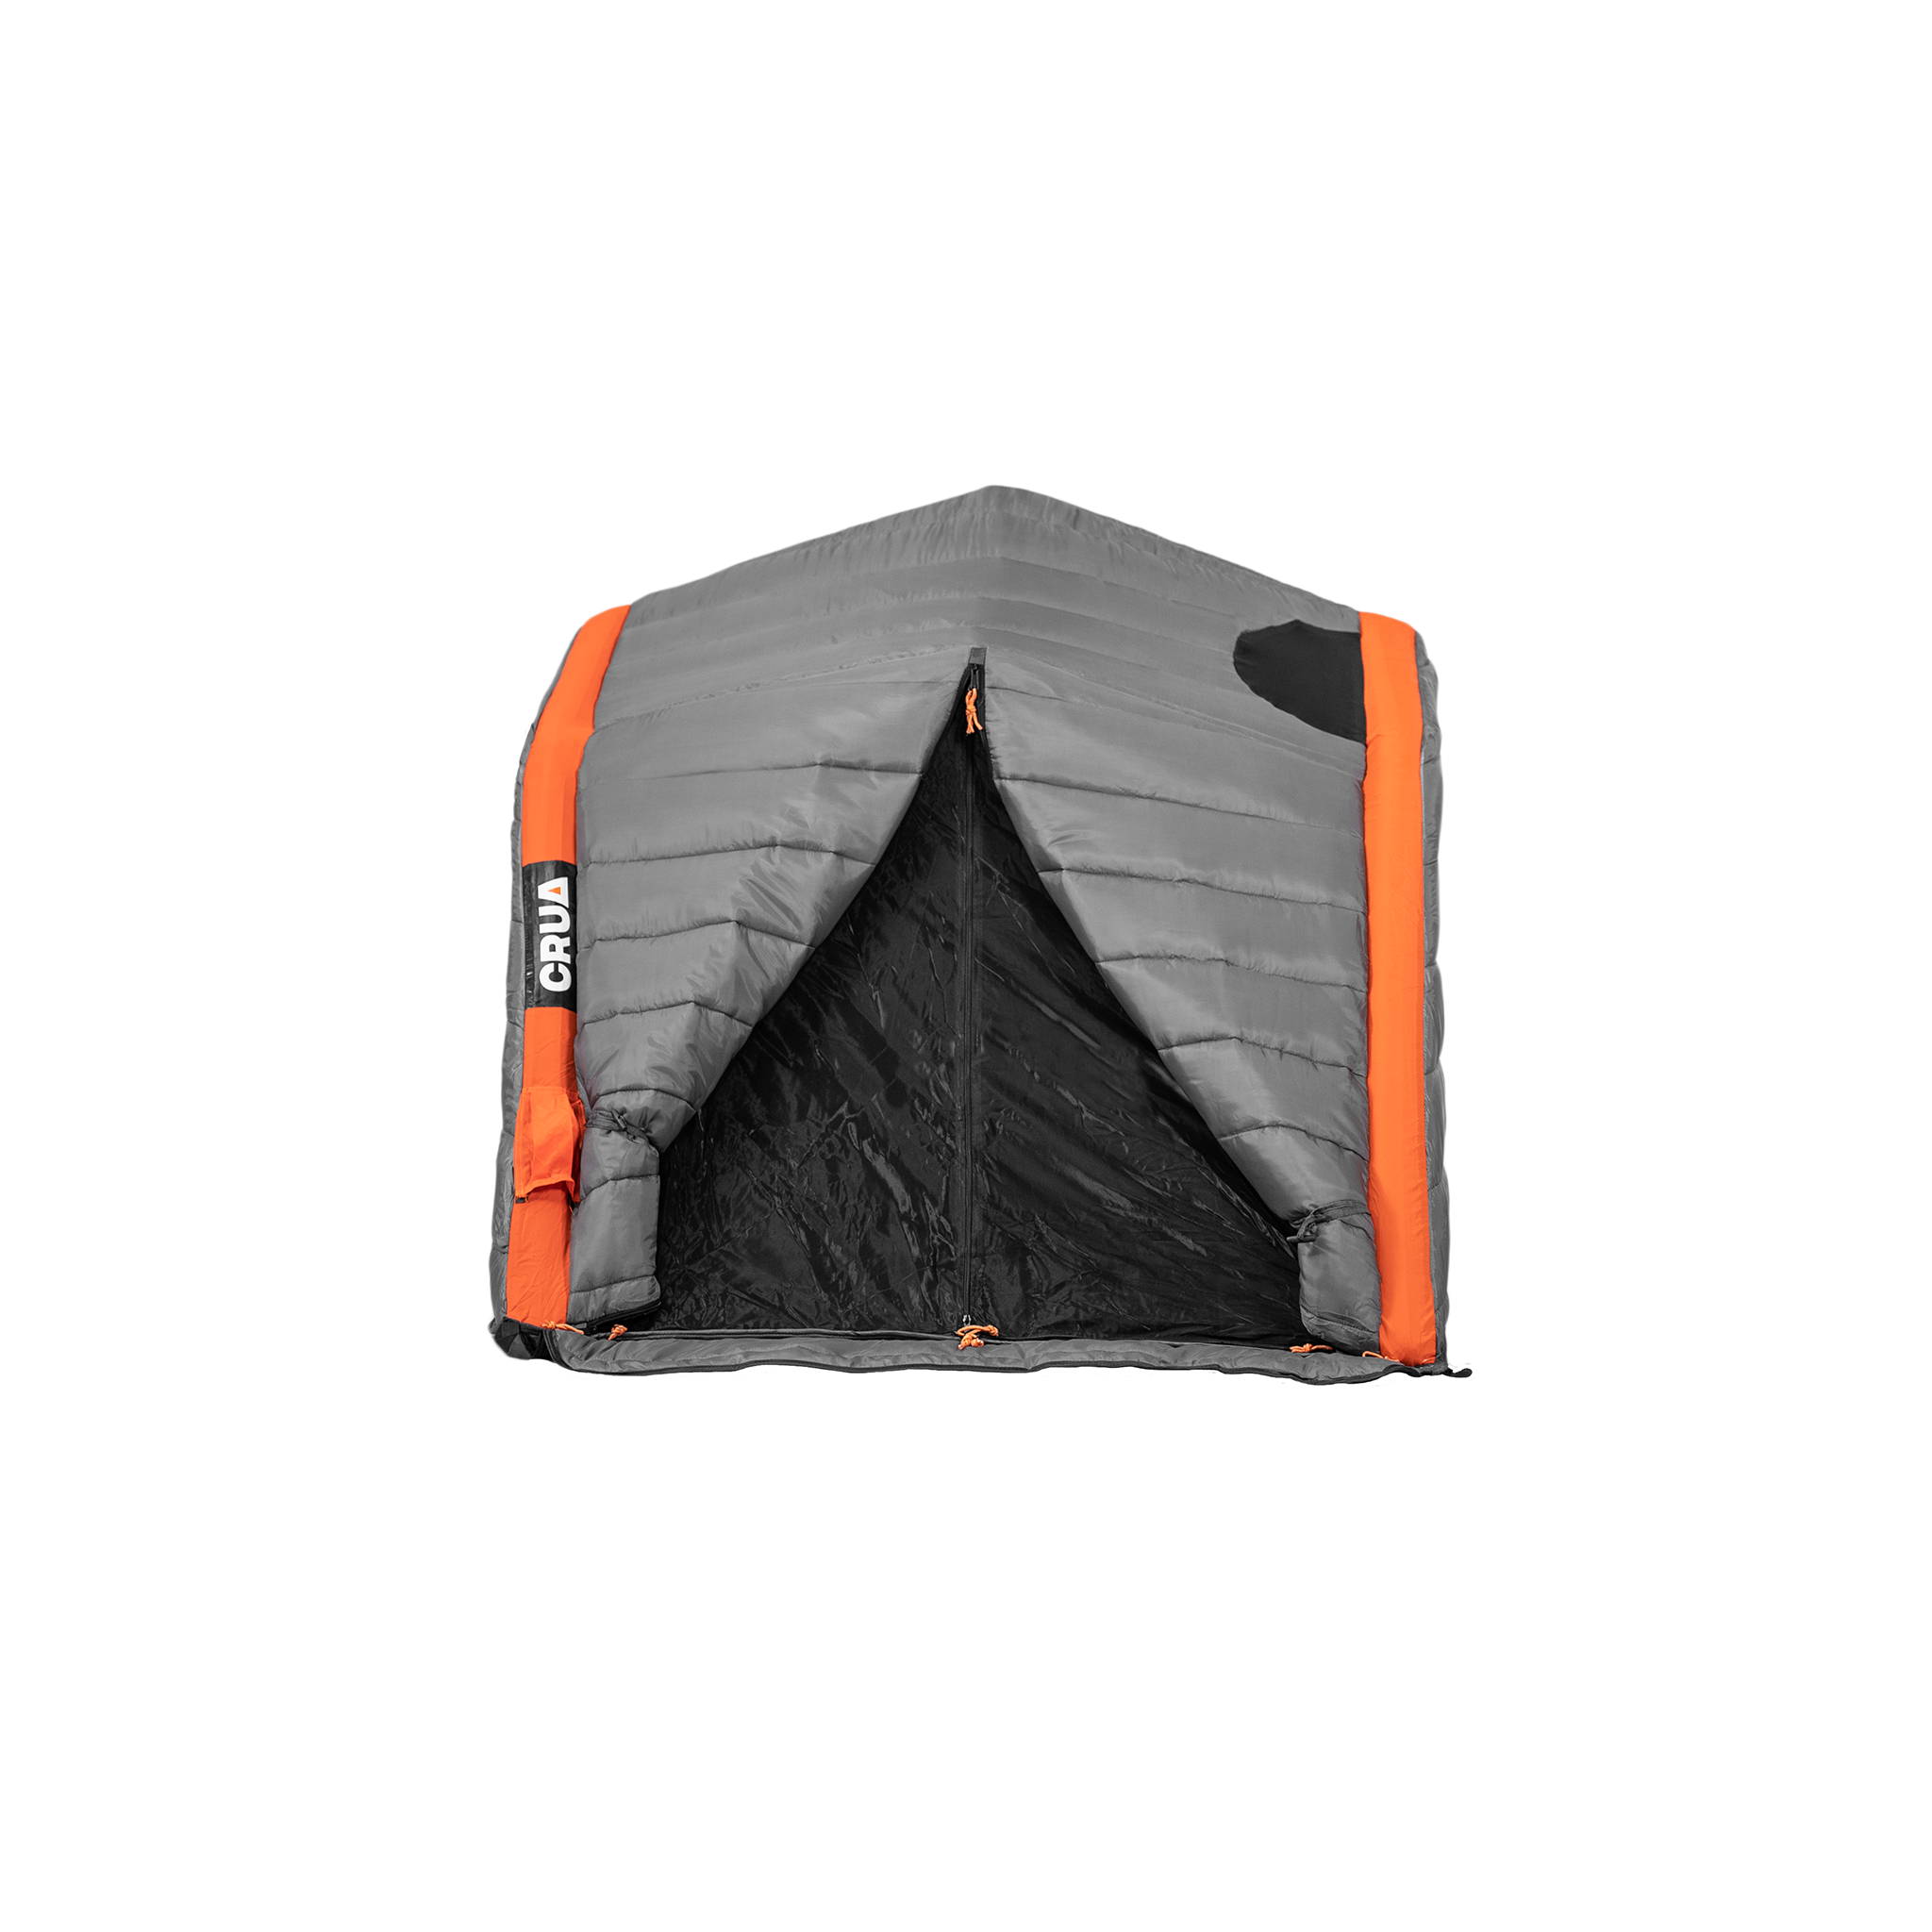 Culla Haul Maxx | 3 Person Insulated Inner Tent